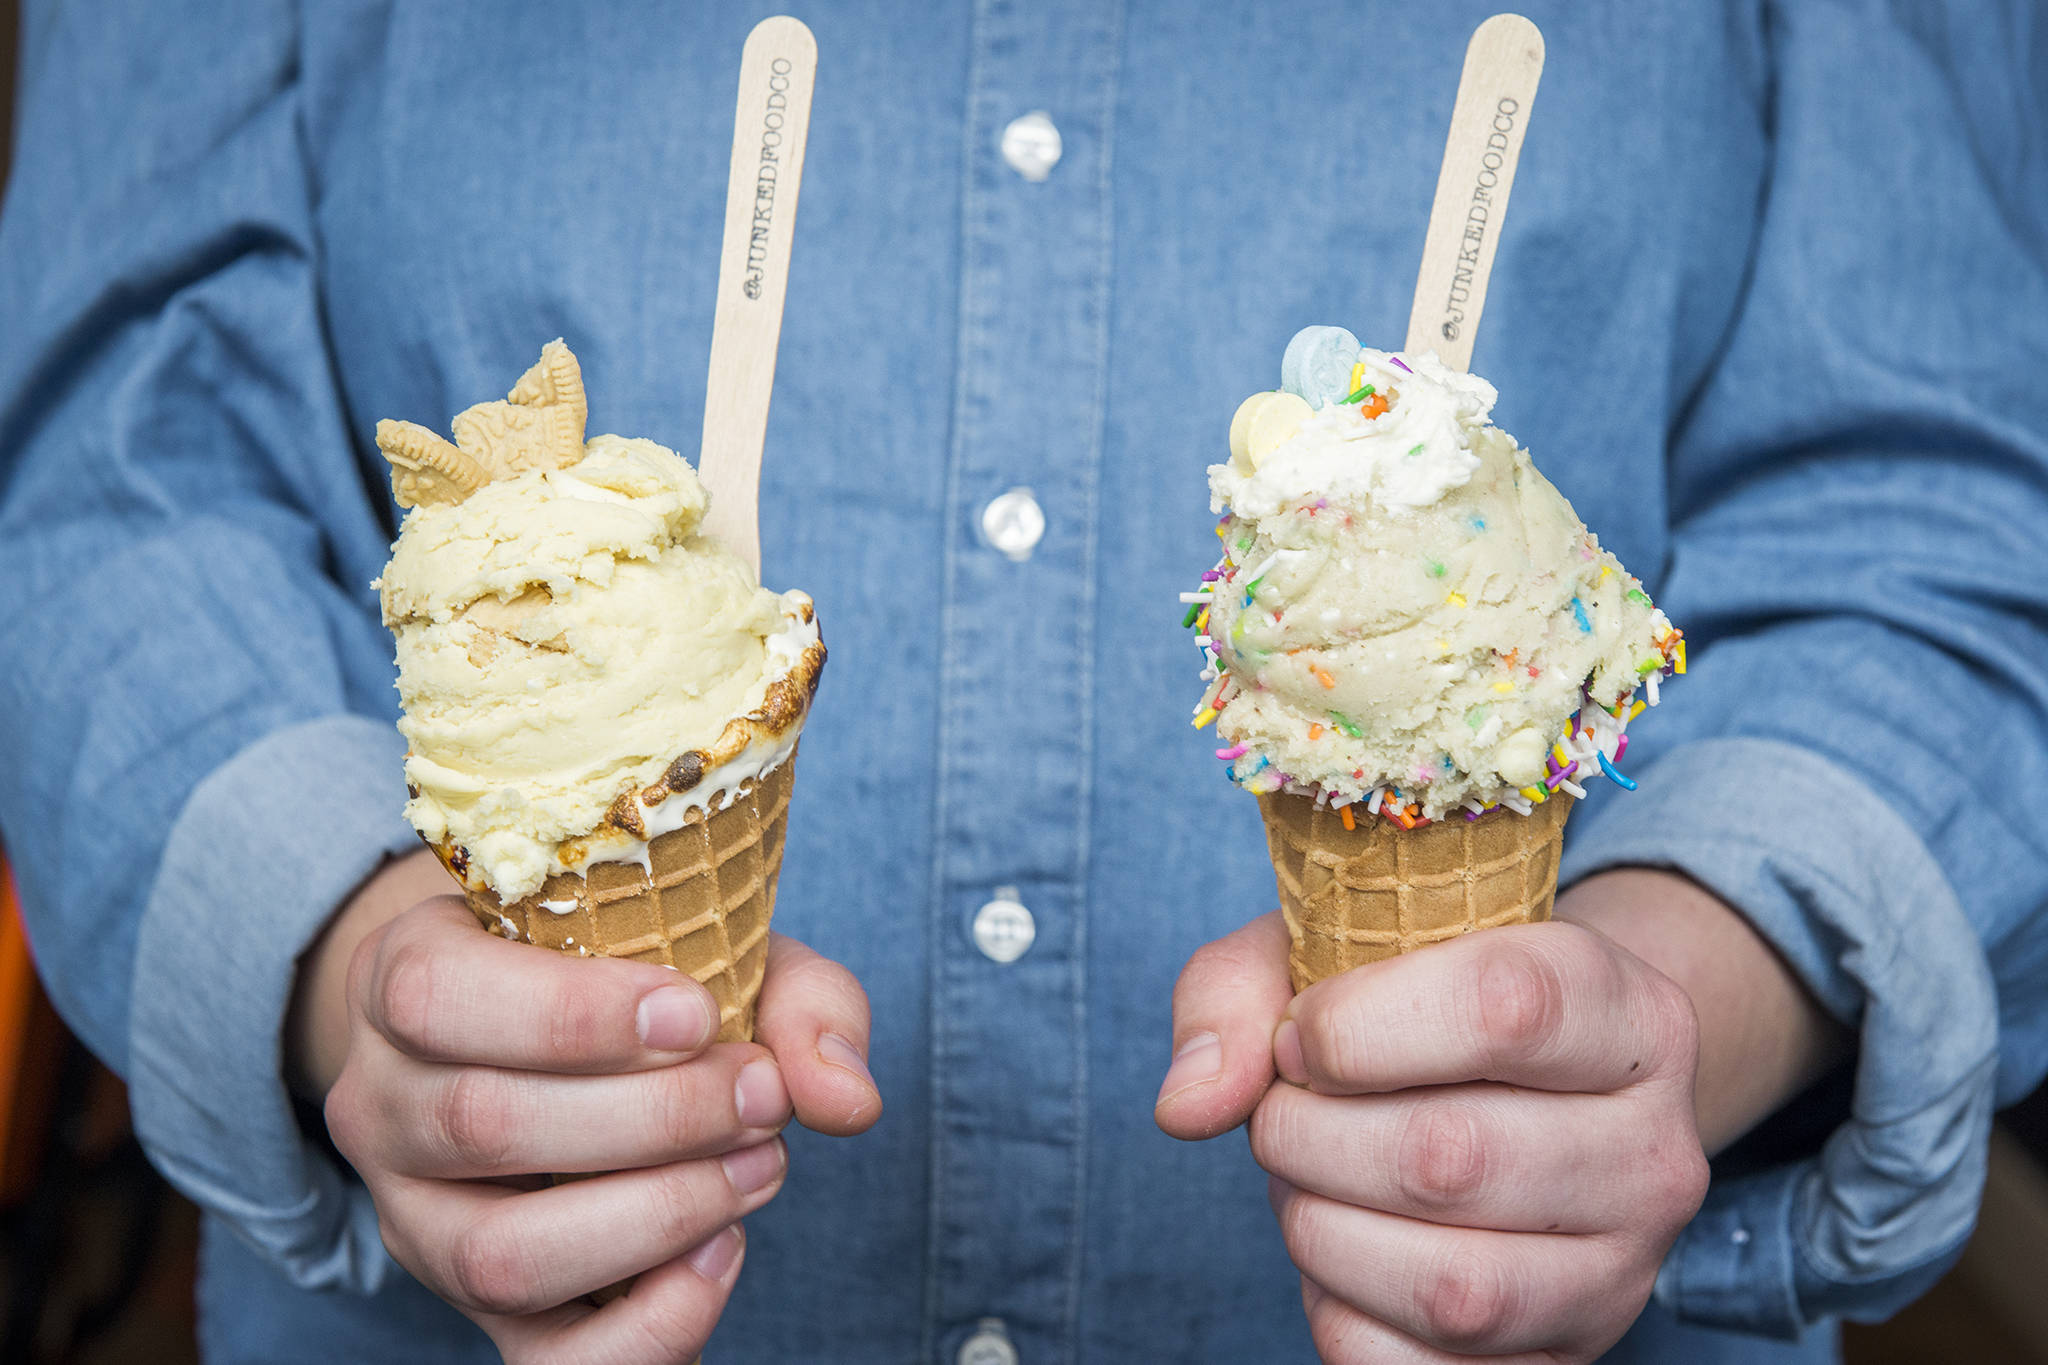 Cookie dough ice cream in two ice cream cones